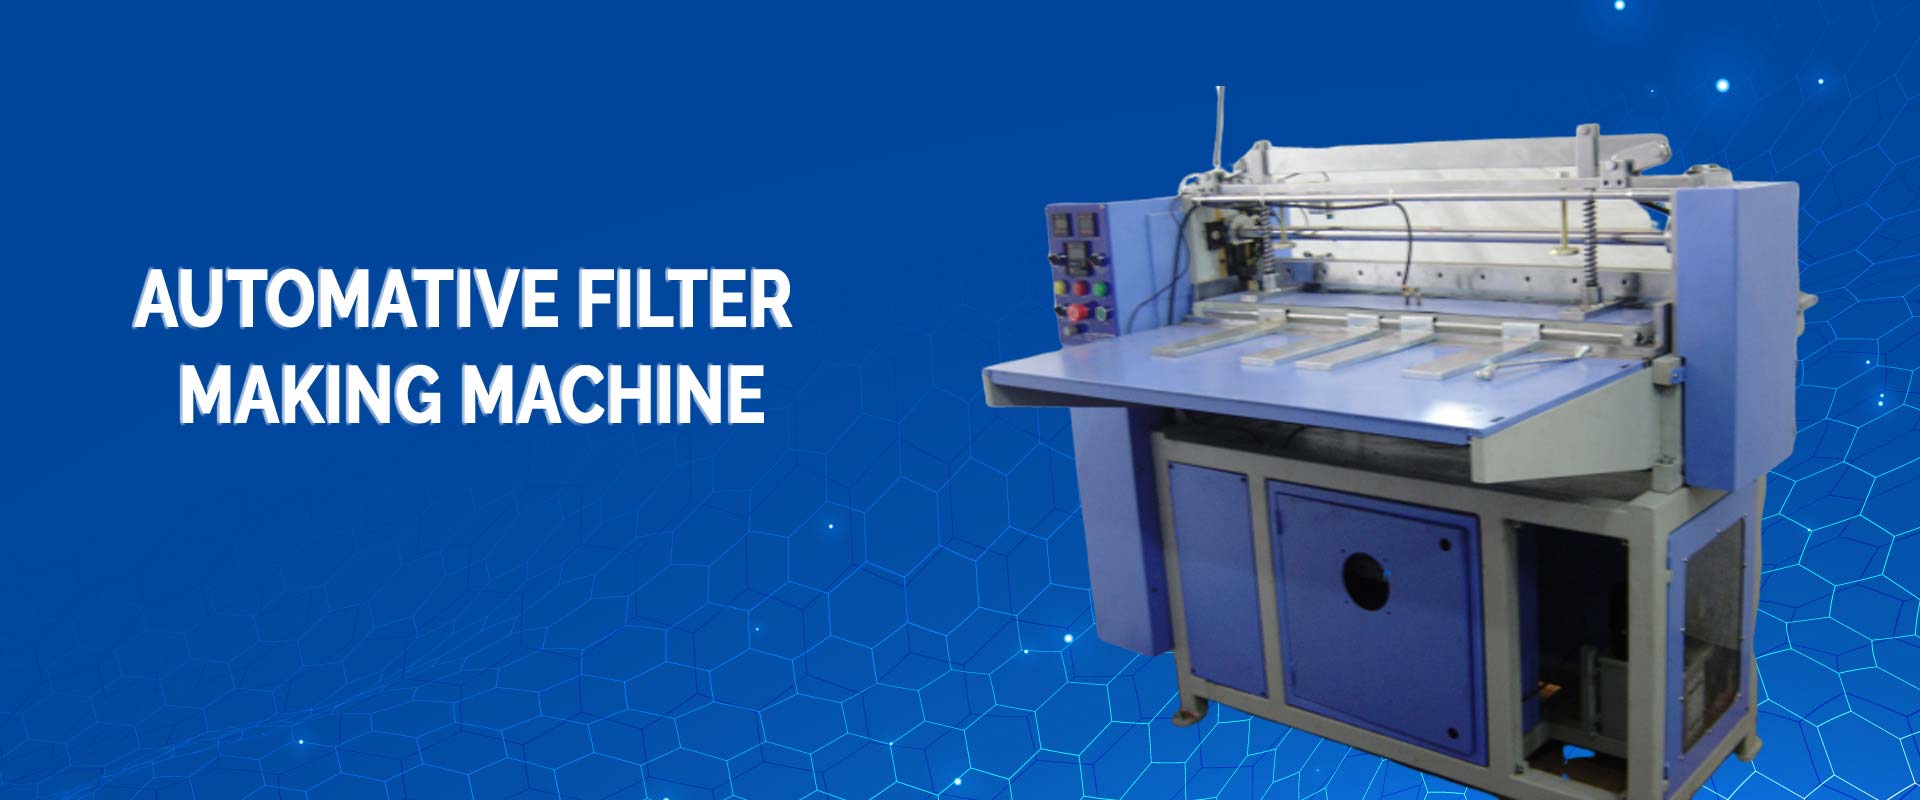 Automative Filter Making Machine